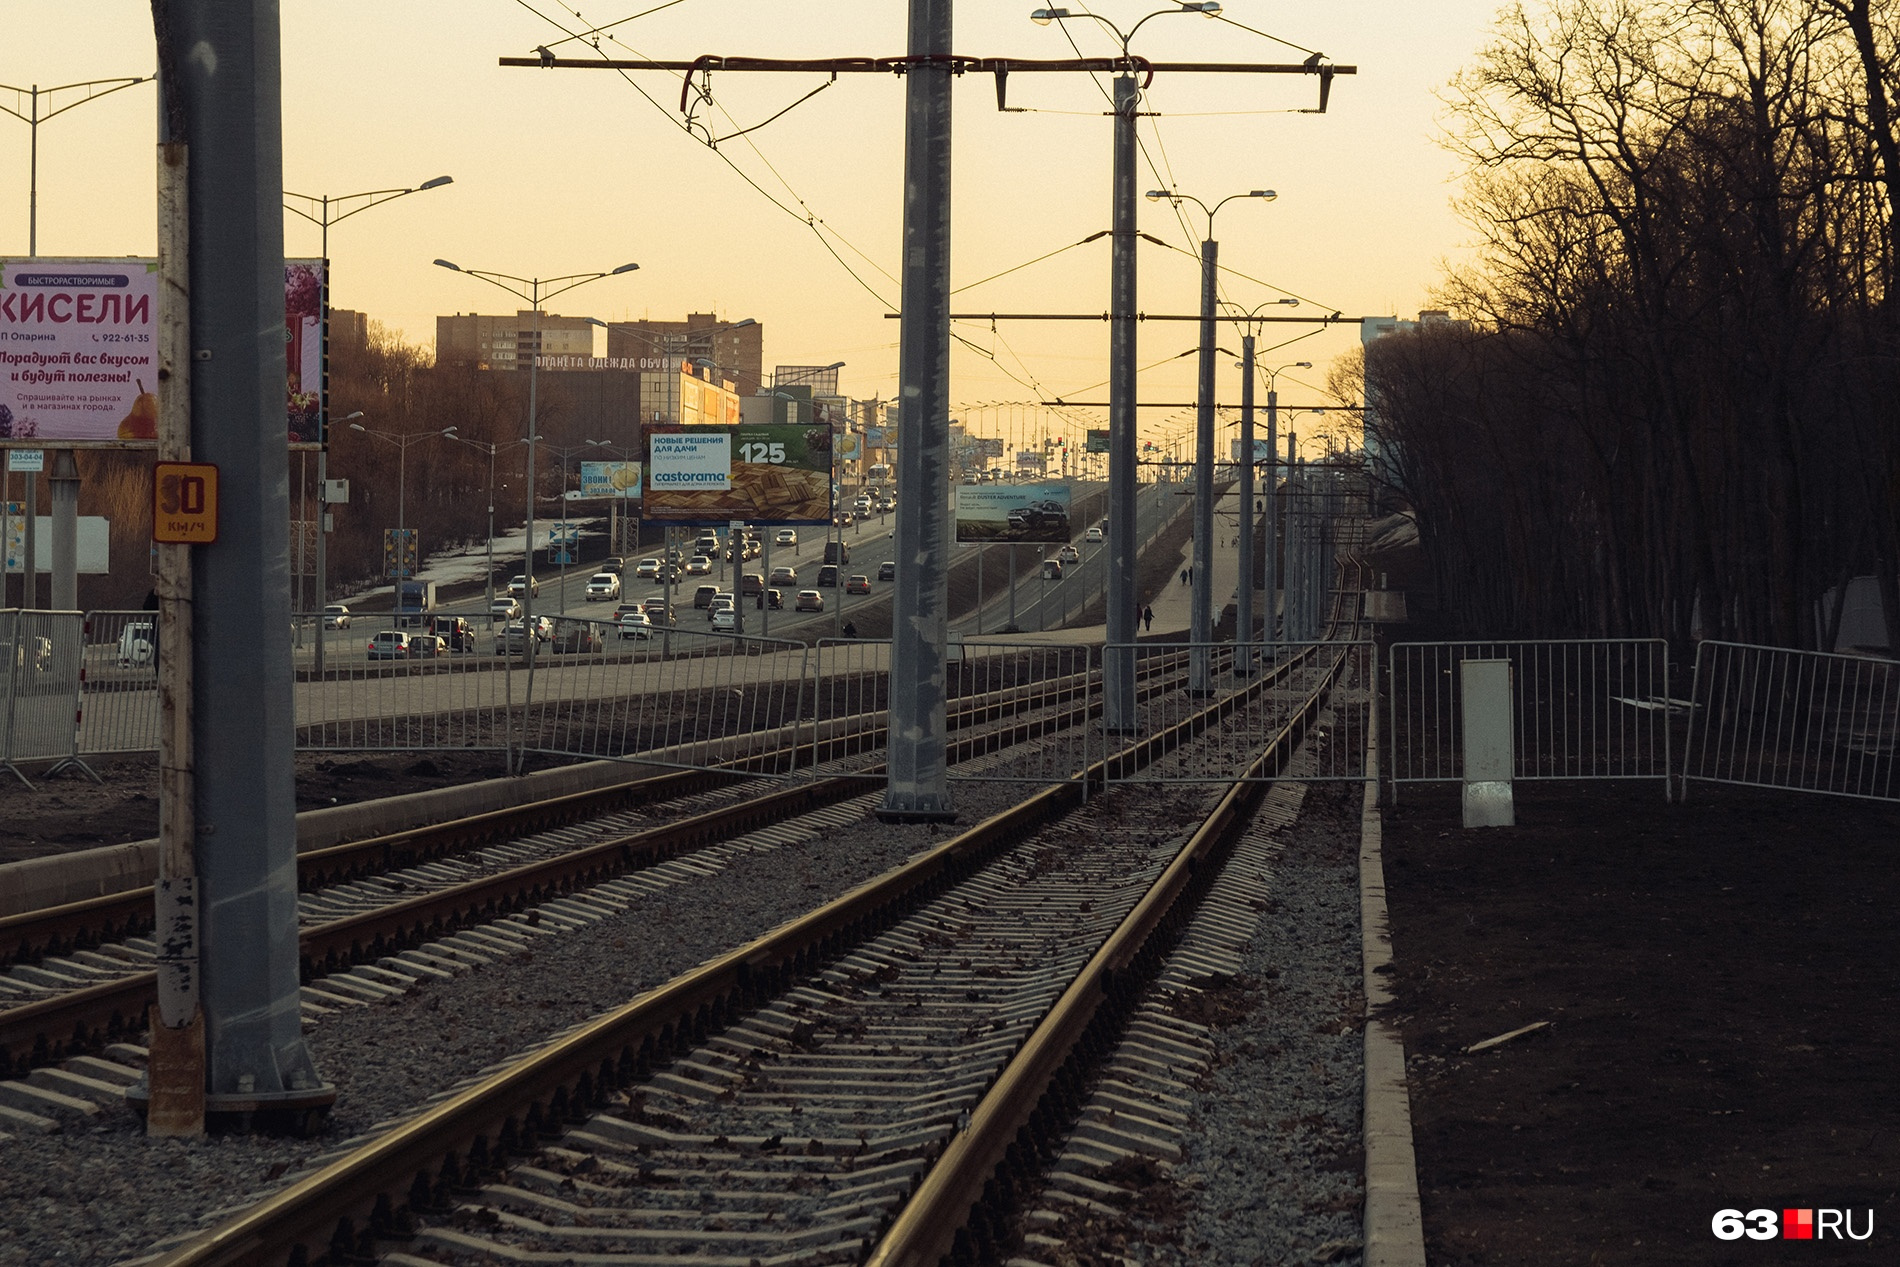 Обустройство трамвайной ветки сильно преобразило Московское шоссе